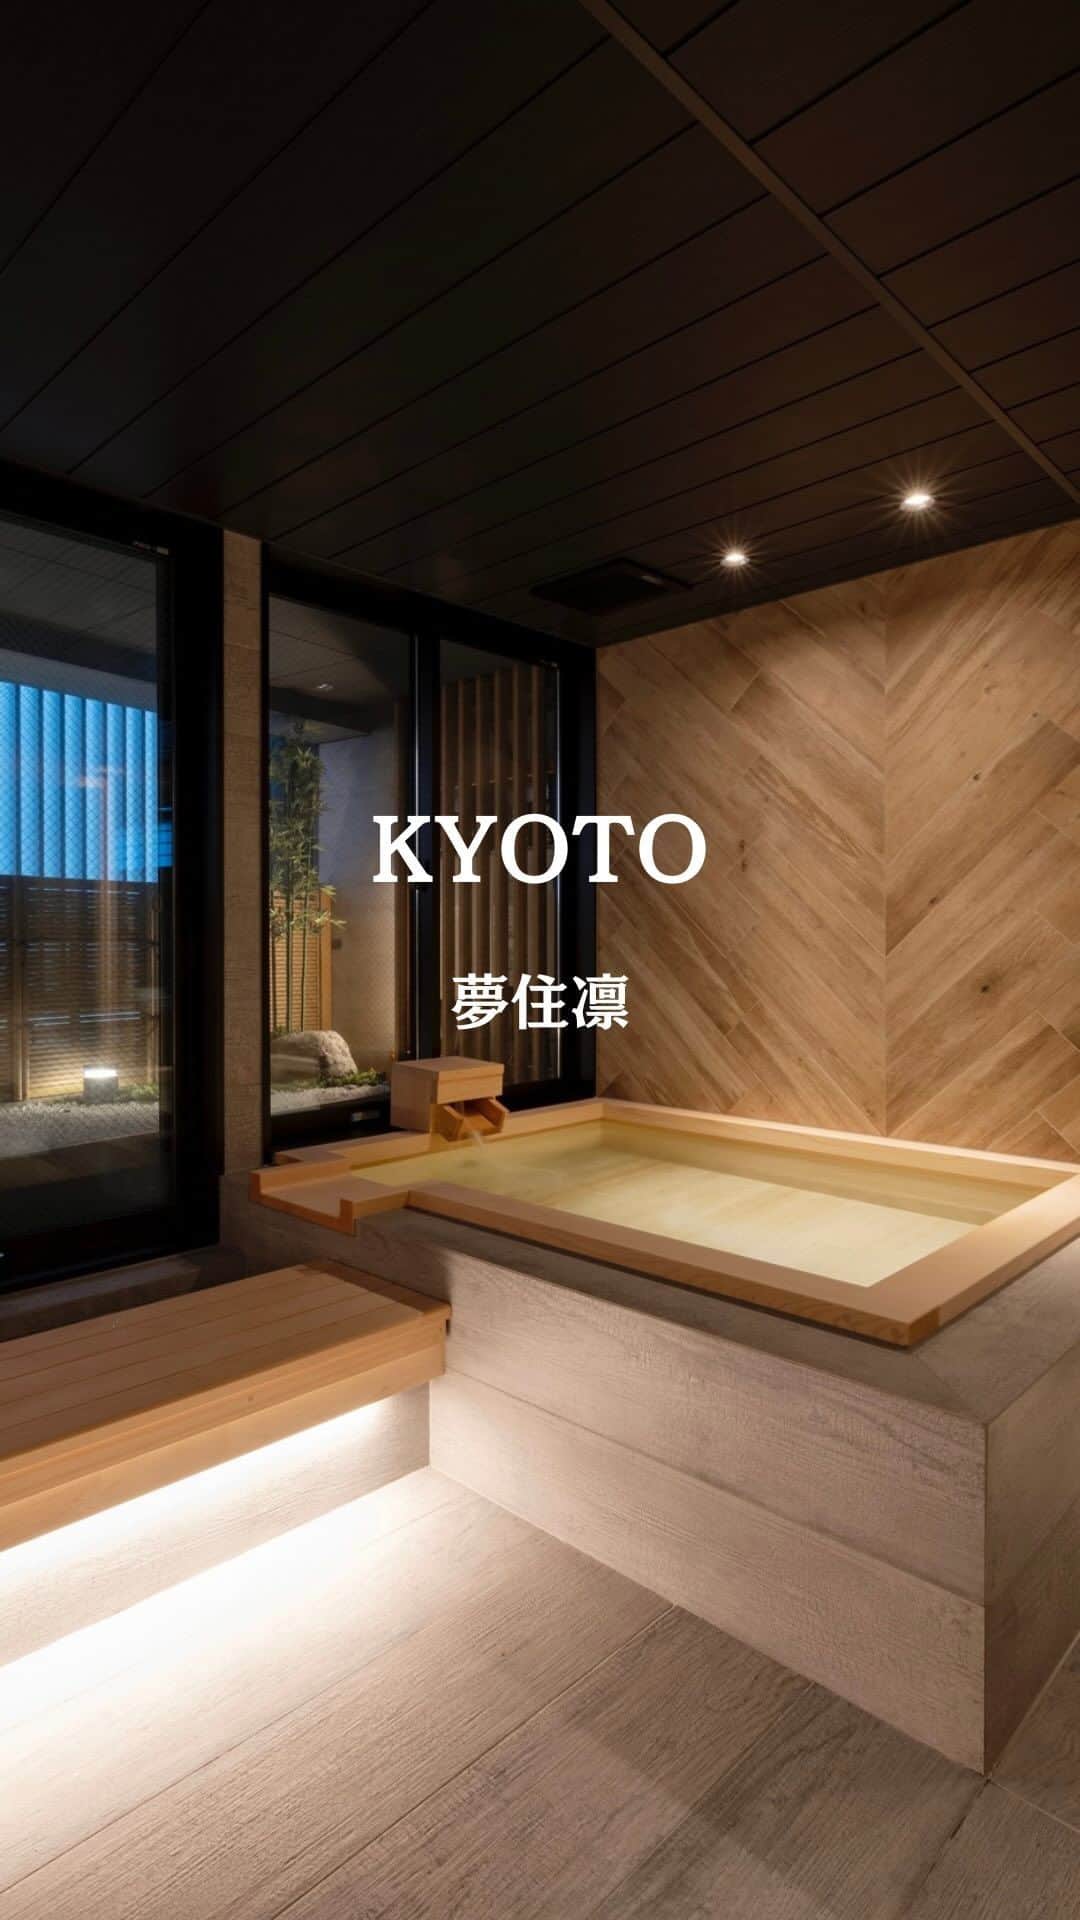 JAPAN TRIP 大人旅〜厳選の宿〜のインスタグラム：「.@mujurin.official 京都の心地よい静寂に包まれた、 一日一組限定の贅沢な隠れ家。  暖簾をくぐり、趣のある格子戸を開けると、 古都の風情と現代の快適さが融合した 特別な空間が広がっています。  ここは、1階から4階まで 一棟まるごと独り占めできる、 贅沢すぎる別荘タイプの プライベート空間です。  2階に浴室、3Fに寝室、 4階にはリビングダイニングと、 それぞれフロアごとに独立していて、 屋上にはテラスも。  浴室は、全面ガラス張りの開放的な空間で、 大人二人でも十分な広さがある檜風呂と、 坪庭を眺めながら、まったりできる 足湯まで用意されています。  檜の香りに包まれて、日頃の疲れを癒してください。  寝室は、枯山水庭園を模した空間が広がり、 眺めているだけで、安らぎと 非日常の時間を感じさせてくれます。  広々とした木の温もりを感じる リビングやダイニングキッチンには、 調理器具やワインセラーまで完備され、 自由なスタイルで特別な時間を満喫できます​​。  流れる時間に身を任せ、 至福の時間をお過ごしください。  ＝DATA＝＝＝＝＝＝＝＝＝＝＝＝＝＝＝＝＝ 📍夢住凛 @mujurin.official  ■ 京都市左京区岡崎徳成町7-6 ■ 客室：1室 ■ IN 15:00～／OUT 11:00 ■ 2名：80,000円～（食事なし） ※目安料金です。料金は施設に確認ください。 ＝＝＝＝＝＝＝＝＝＝＝＝＝＝＝＝＝＝＝＝＝  🔸大人の隠れ家 🔸一日一組限定 🔸一棟貸切 🔸屋上テラス 🔸キッチン付き 🔸檜風呂 🔸足湯 🔸駐車場あり 🔸子供不可 🔸ペット不可  ✈︎−−−−−−−−−−−−−−−−−−−−−−−−−−−−−✈︎ 　良かったら、あなたのお気に入り宿も 　コメント欄で教えてください🙇‍♂️ ✈︎−−−−−−−−−−−−−−−−−−−−−−−−−−−−−✈︎  PR #京都旅行 #一棟貸切 #貸別荘 #京都ホテル #京都好き #大人の隠れ家 #高級ホテル #高級旅館 #高級貸別荘 #屋上テラス #檜風呂 #足湯 #枯山水 #一日一組限定   #大人旅jp #大人旅 #大人旅の宿 #国内旅行 #家族旅行 #ご褒美旅行 #贅沢旅行 #記念日旅行 #japantrip #japantravel」